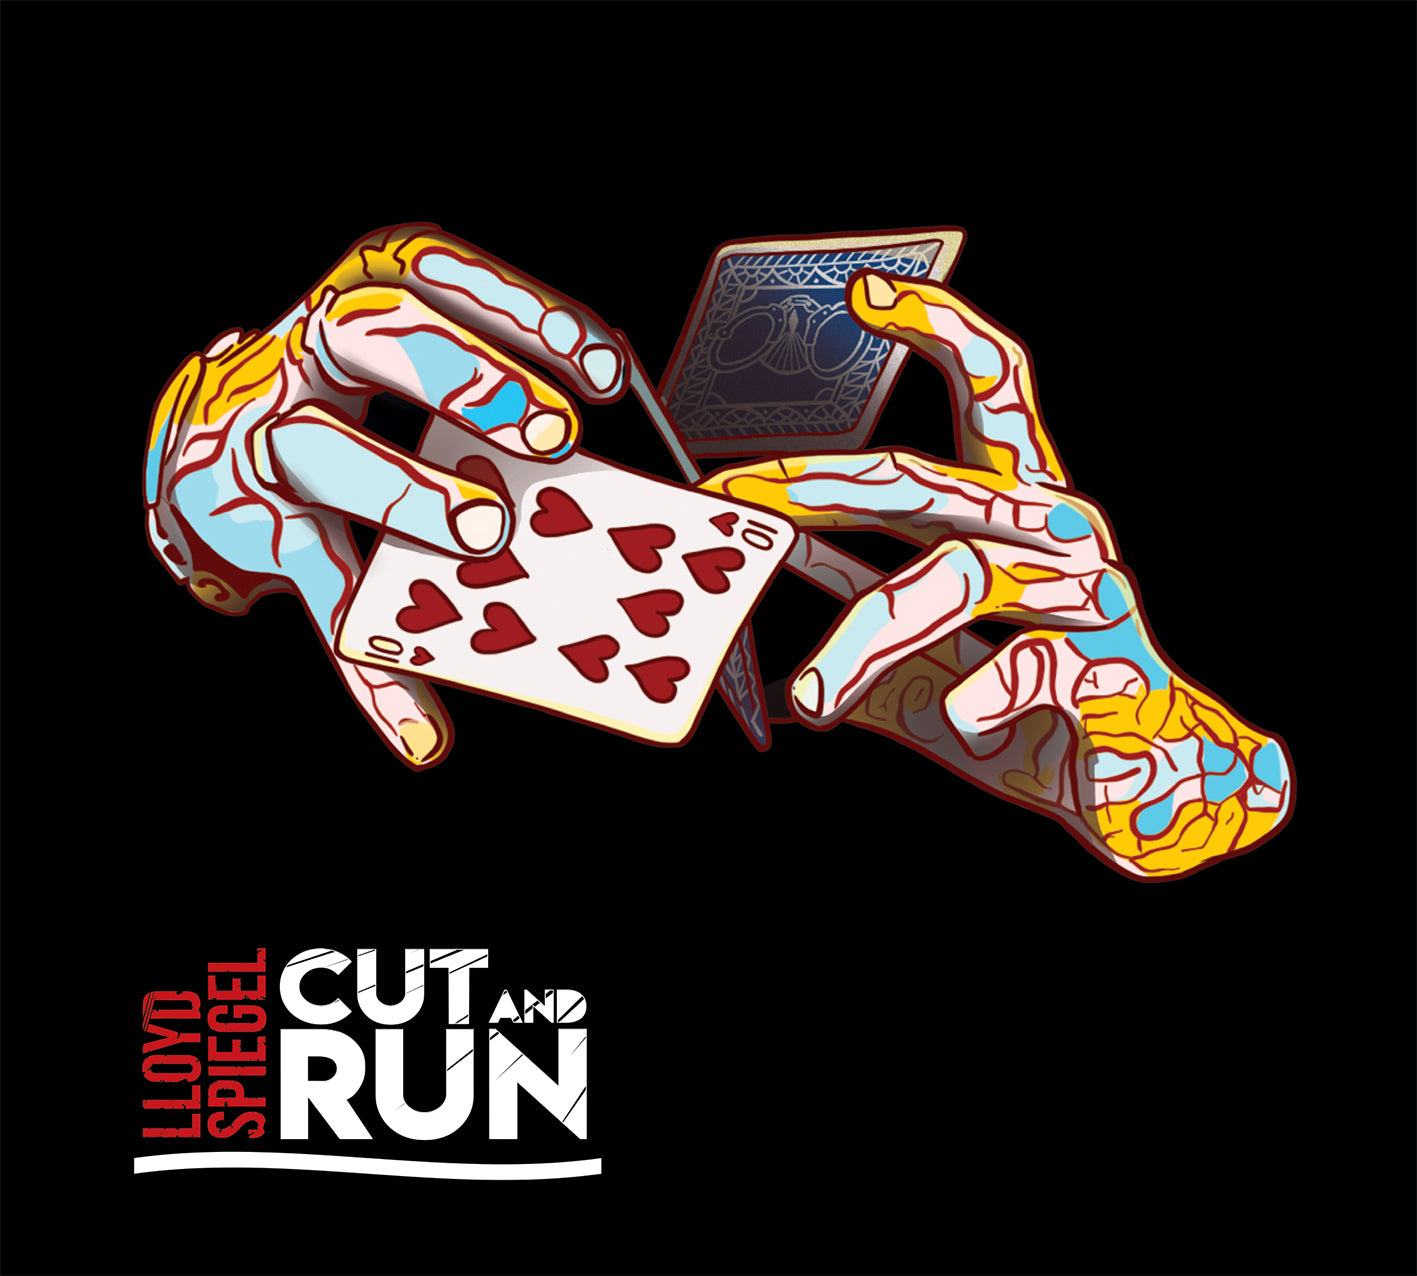 Cut and Run (2019) - Physical CD